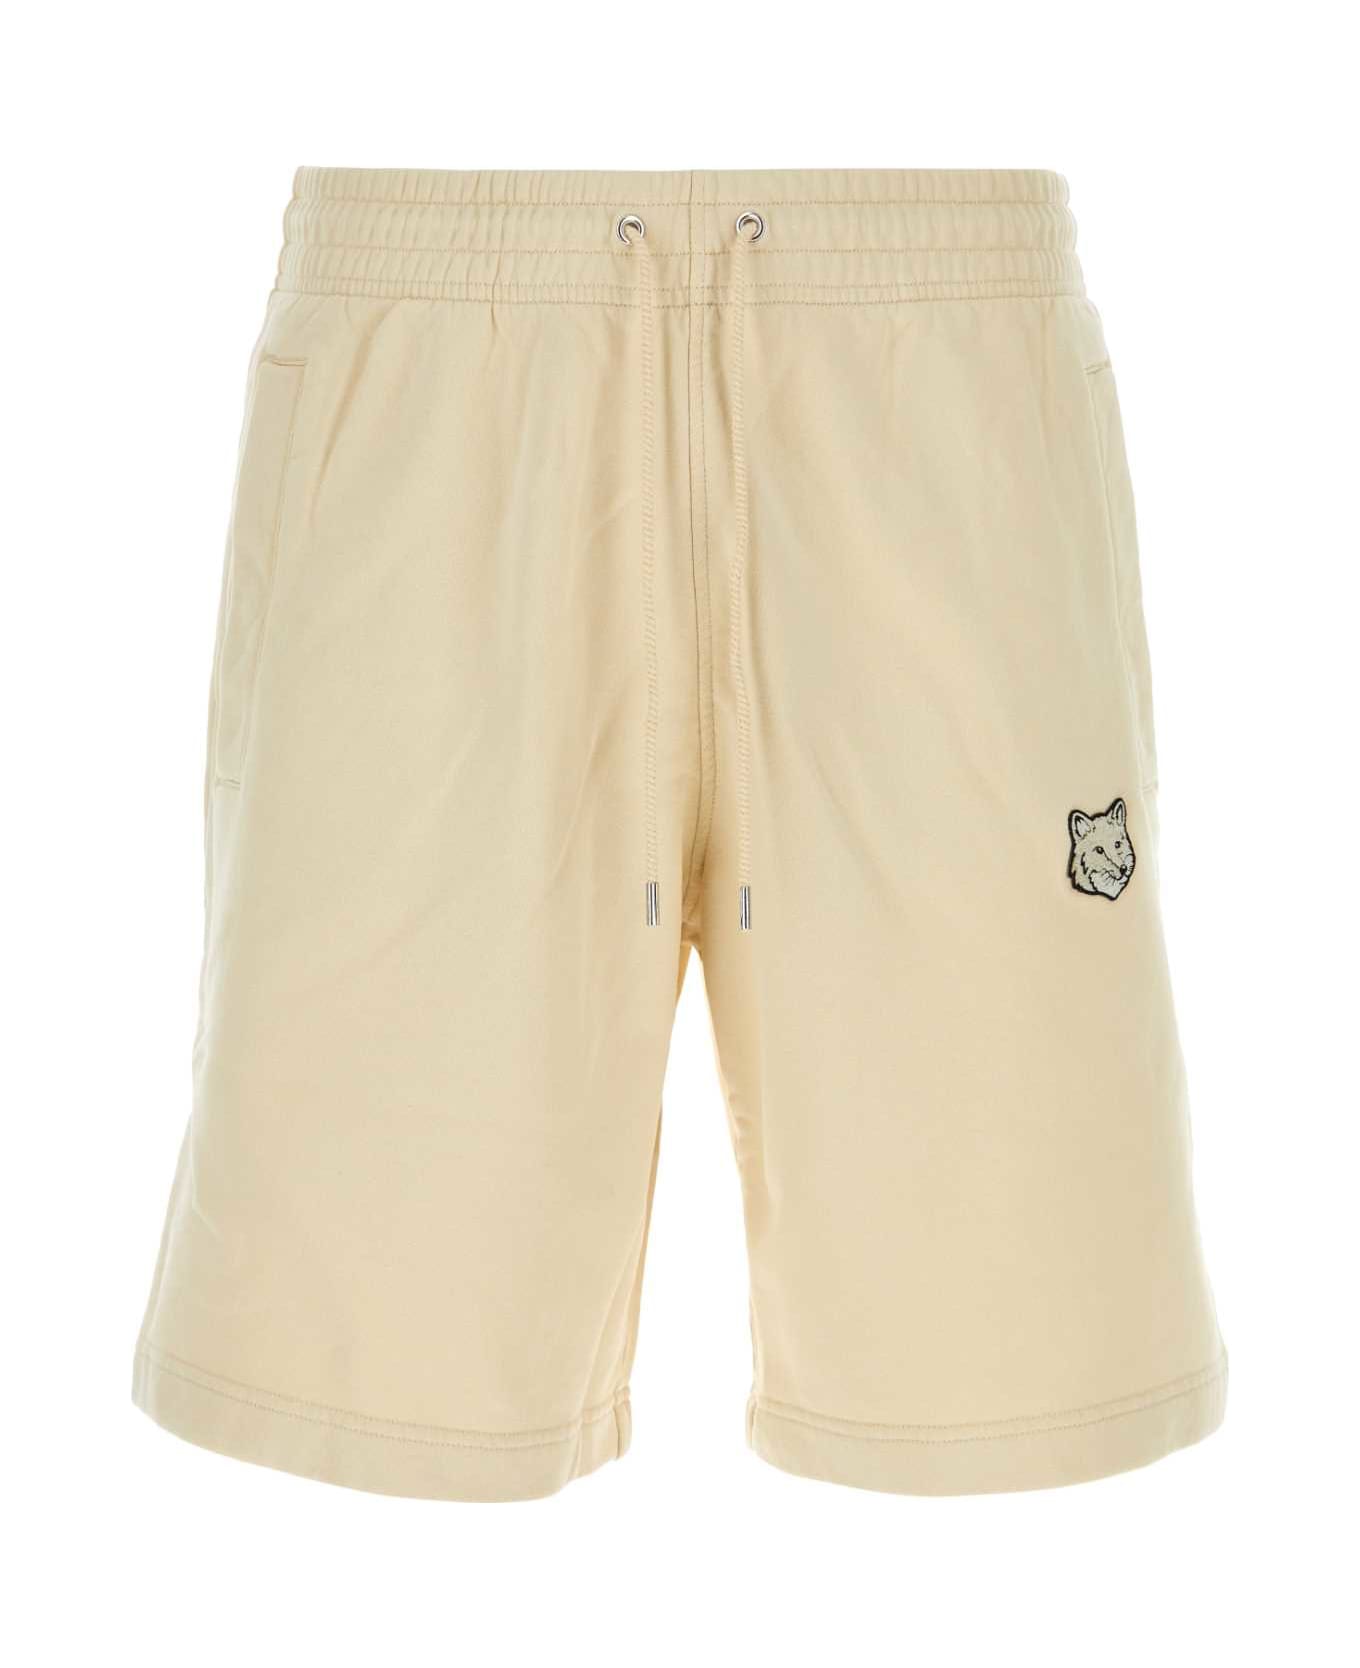 Maison Kitsuné Sand Cotton Bermuda Shorts - PAPER ショートパンツ